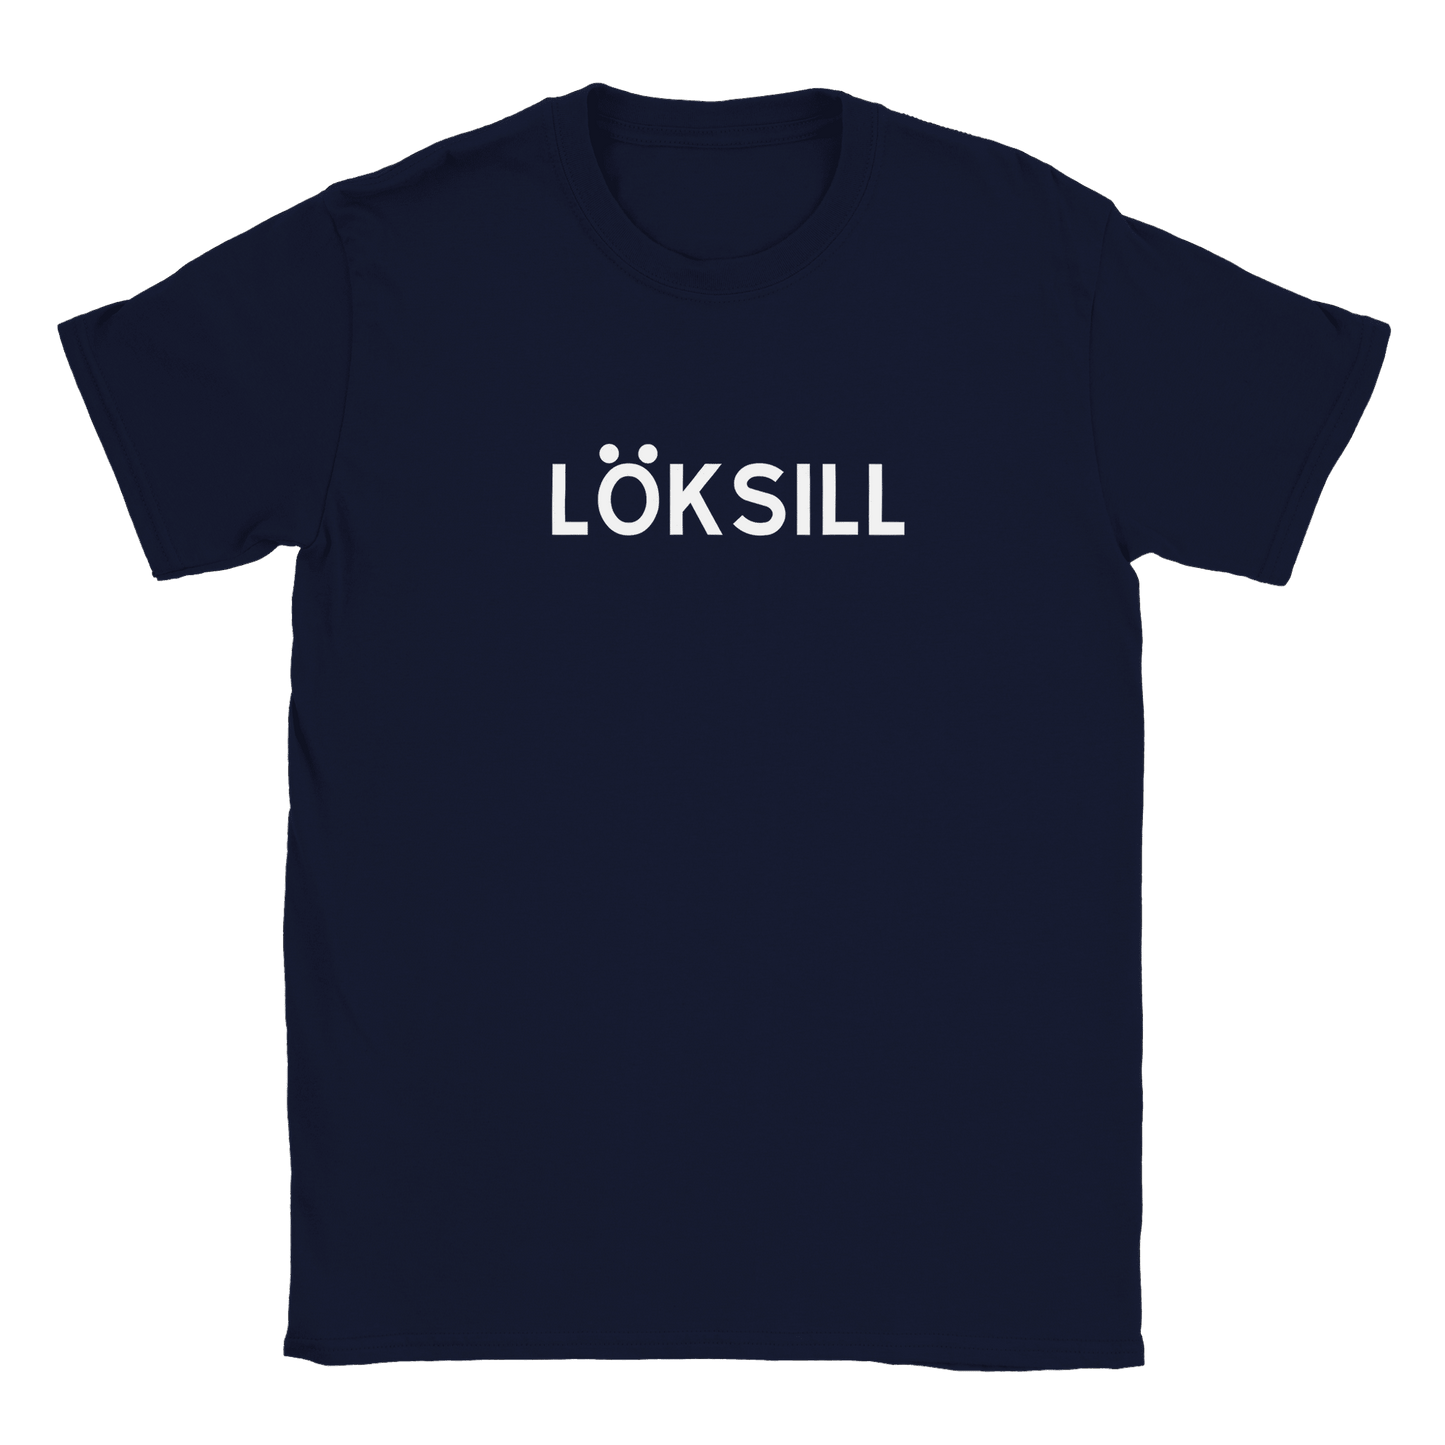 Löksill - T-shirt Navy